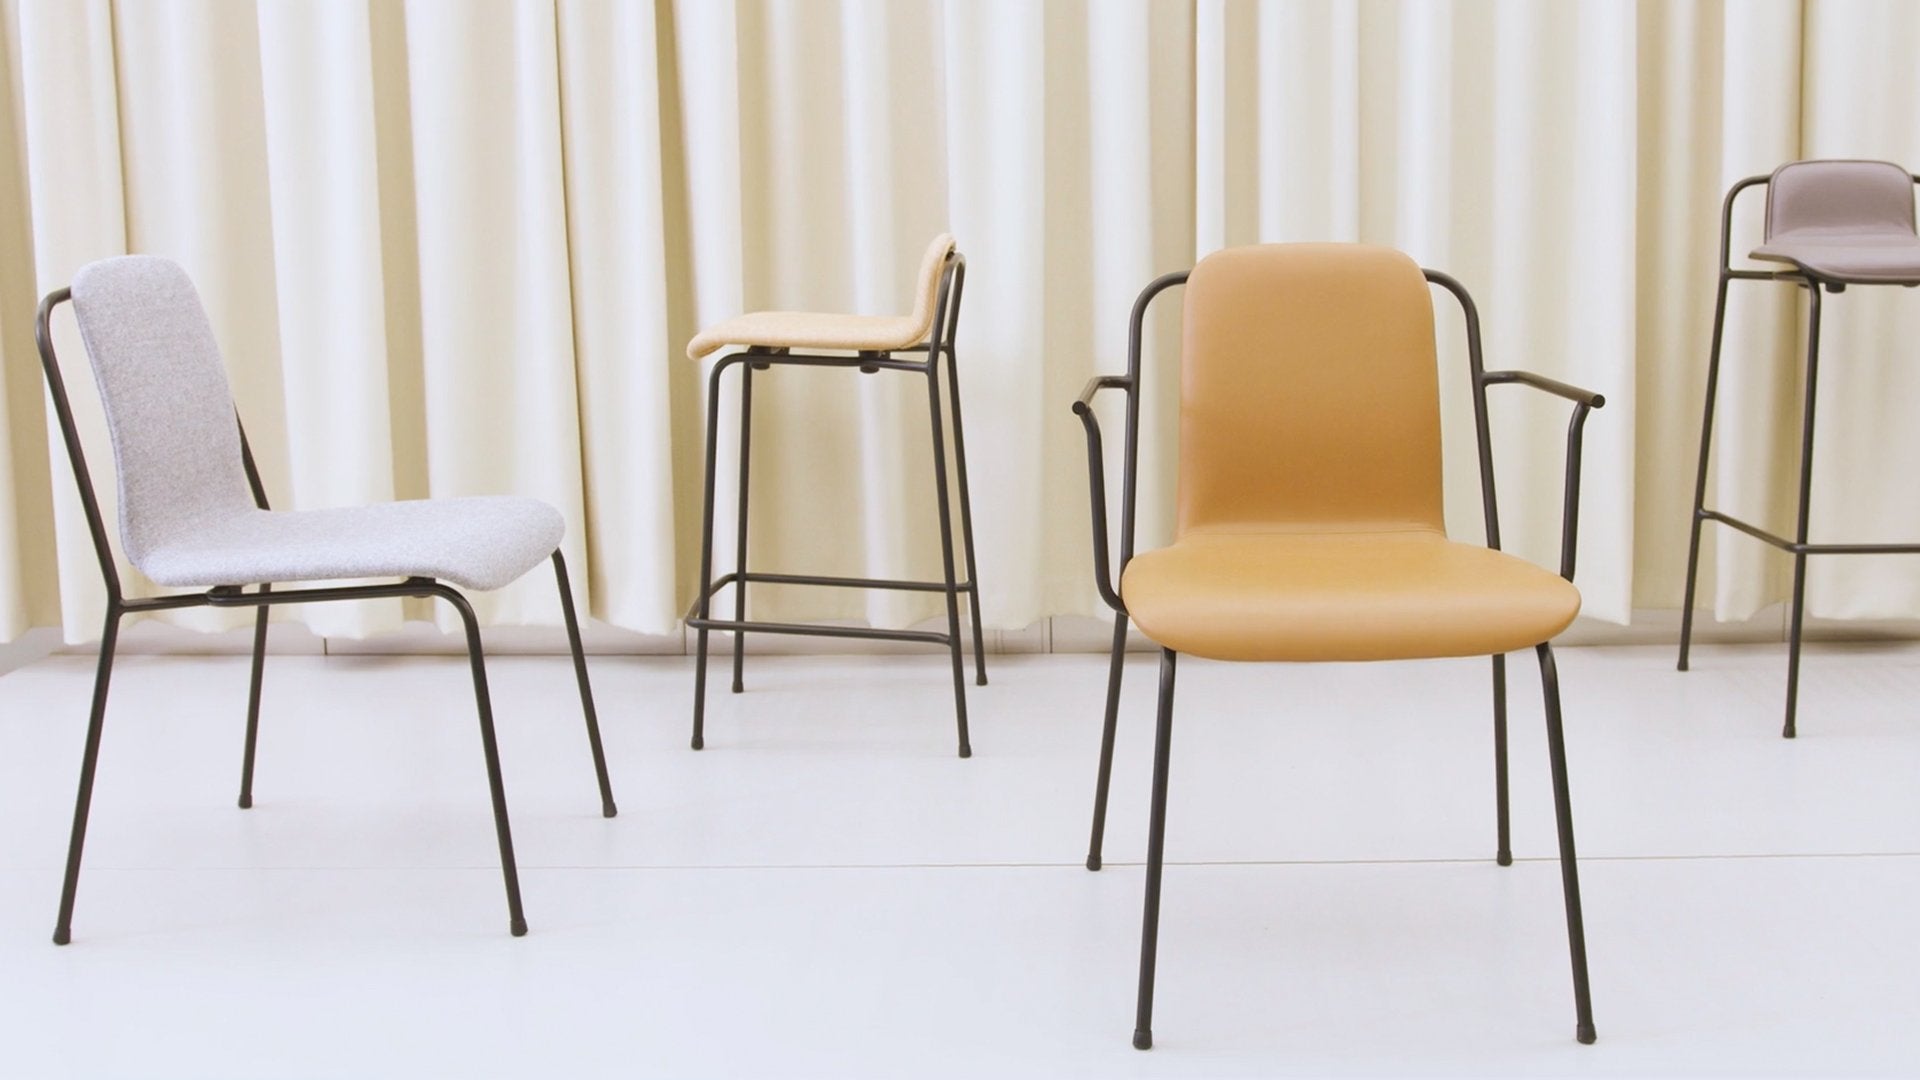 https://aplusrstore.com/products/normann-copenhagen-studio-bar-counter-stool